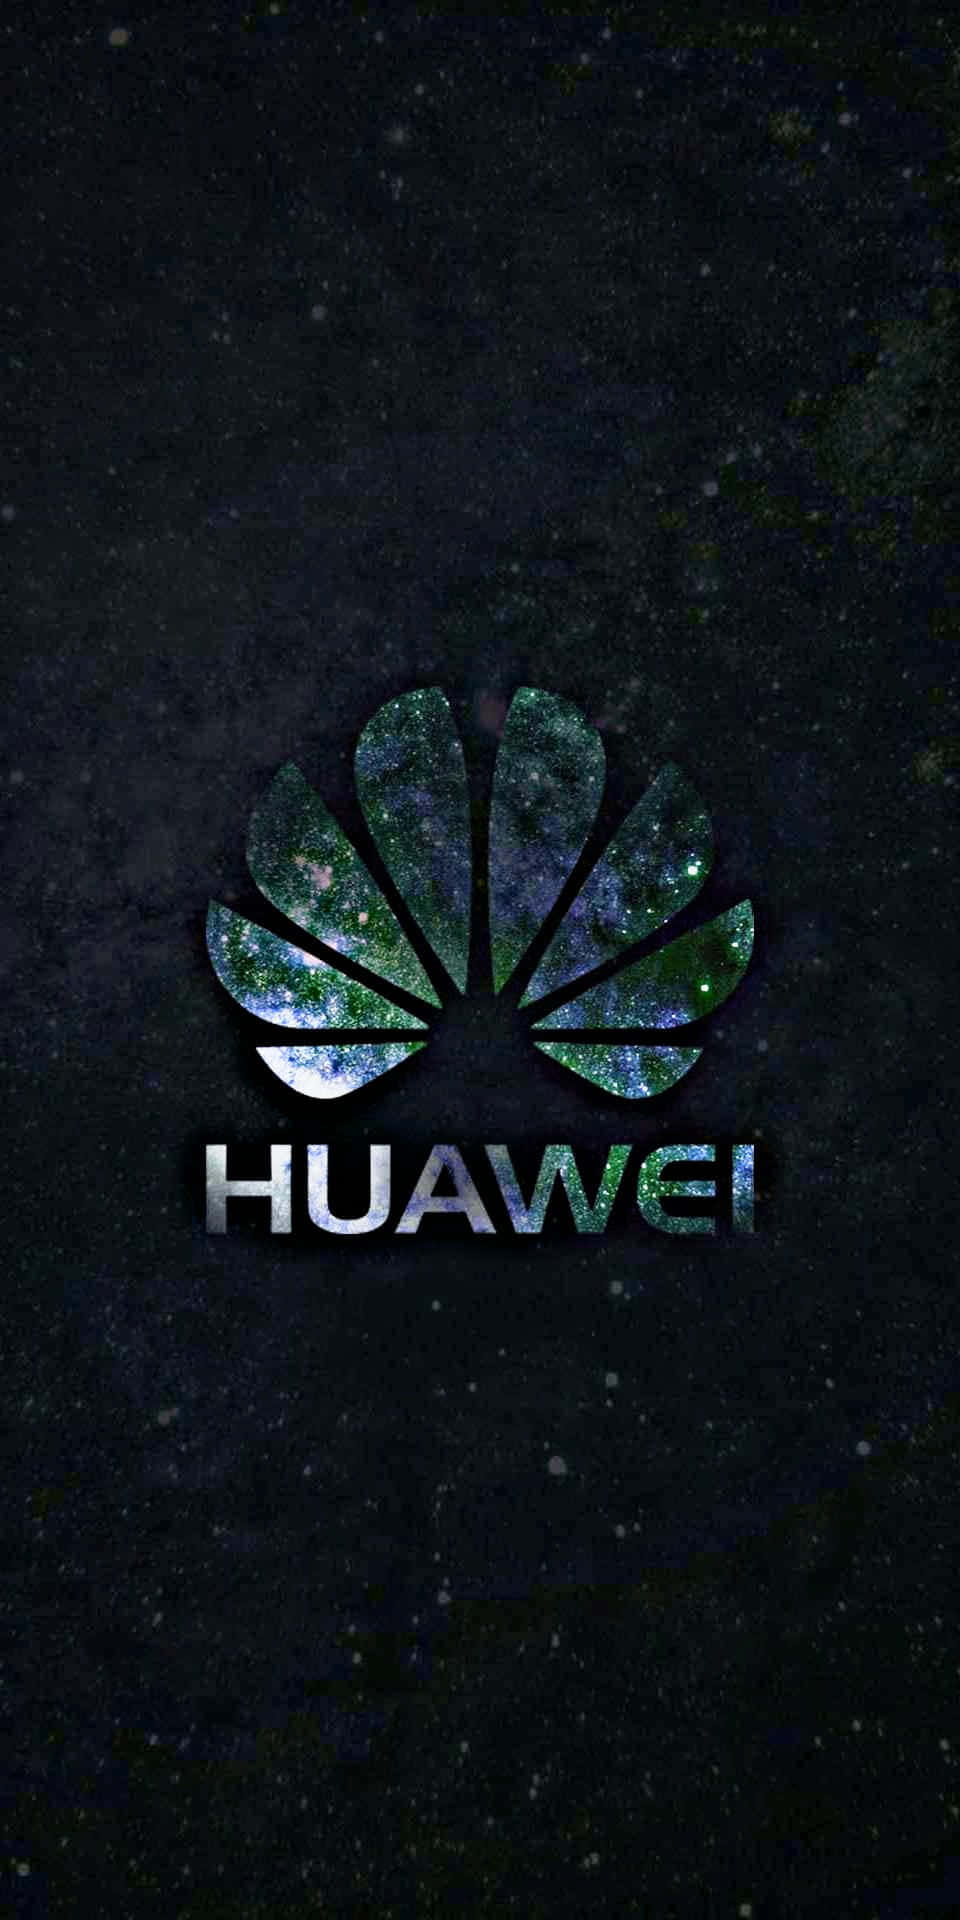 Presentandoel Siguiente Nivel En Innovación Y Tecnología: Huawei.